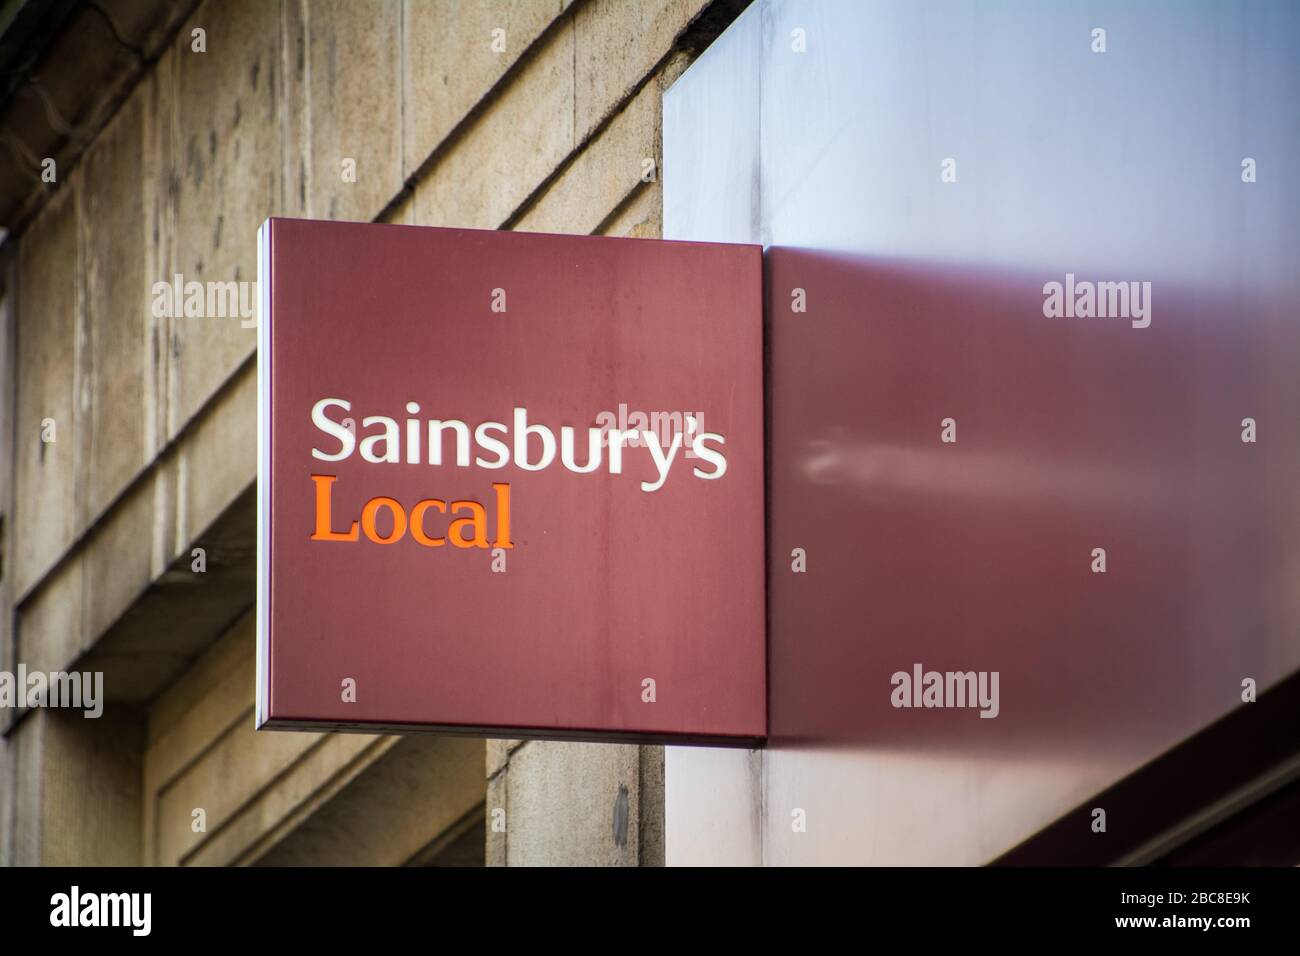 Sainsbury's Local, filiale britannica del supermercato, logo esterno / segnaletica - Londra Foto Stock